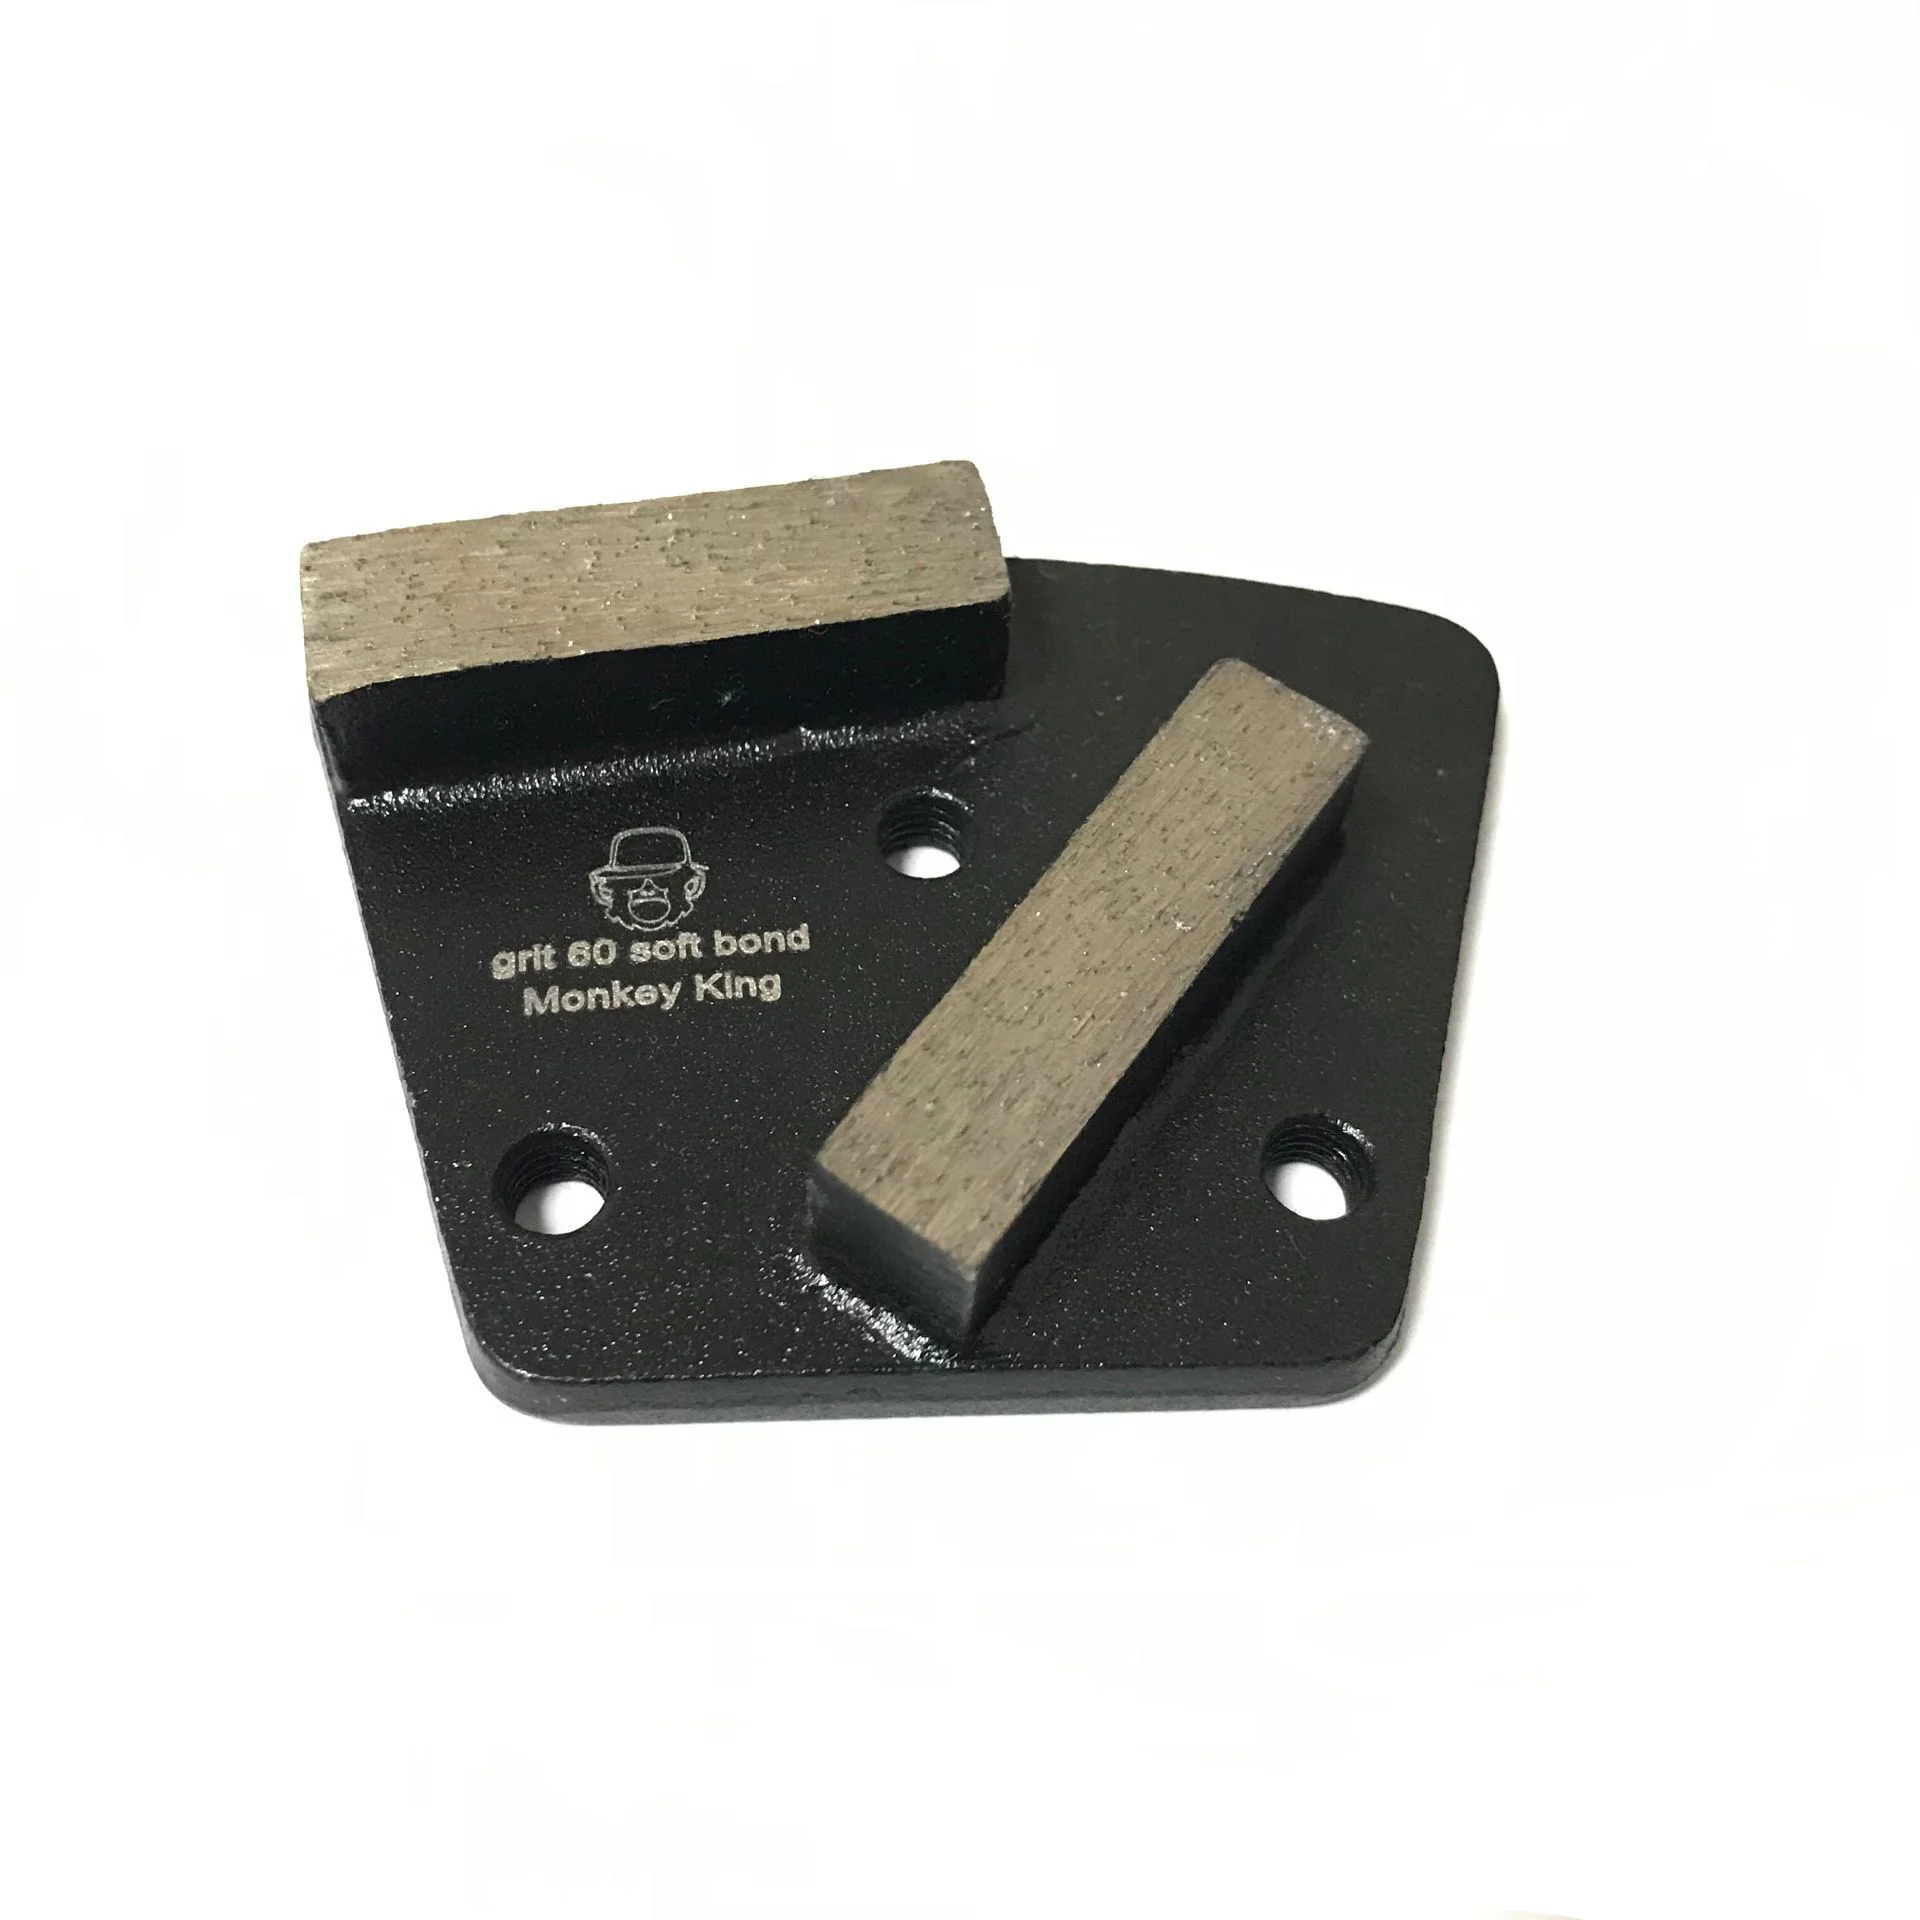 6 pieces double buttons Traps Floor Shoe Trapezoid Metal Diamond Concrete Grinding Disc Pad grit 60 soft bond